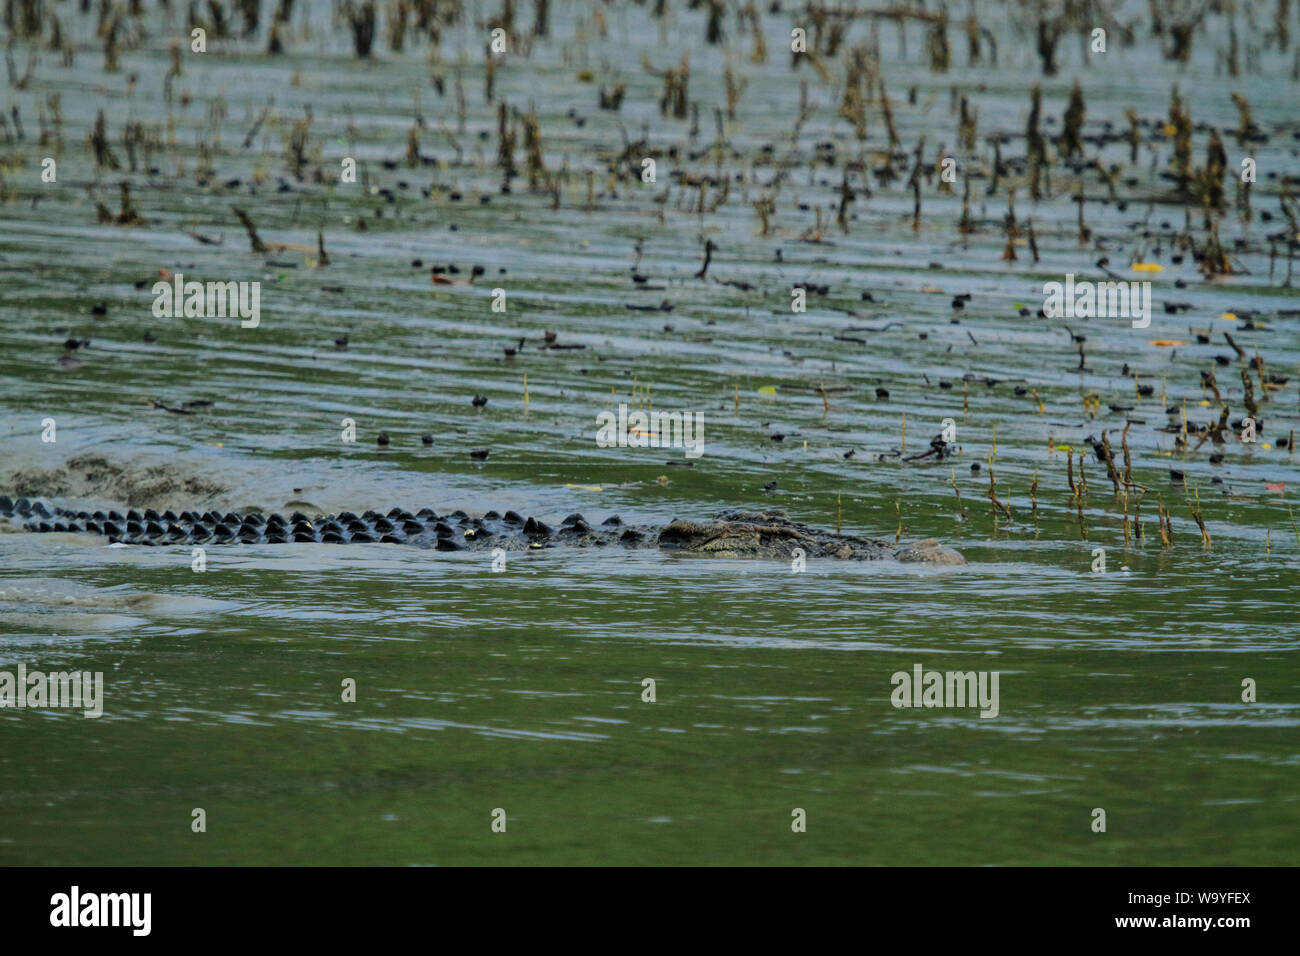 Ein Salz - Wasser Krokodil in den Sundarbans, der größte Mangrovenwald der Welt. Bangladesch. Stockfoto